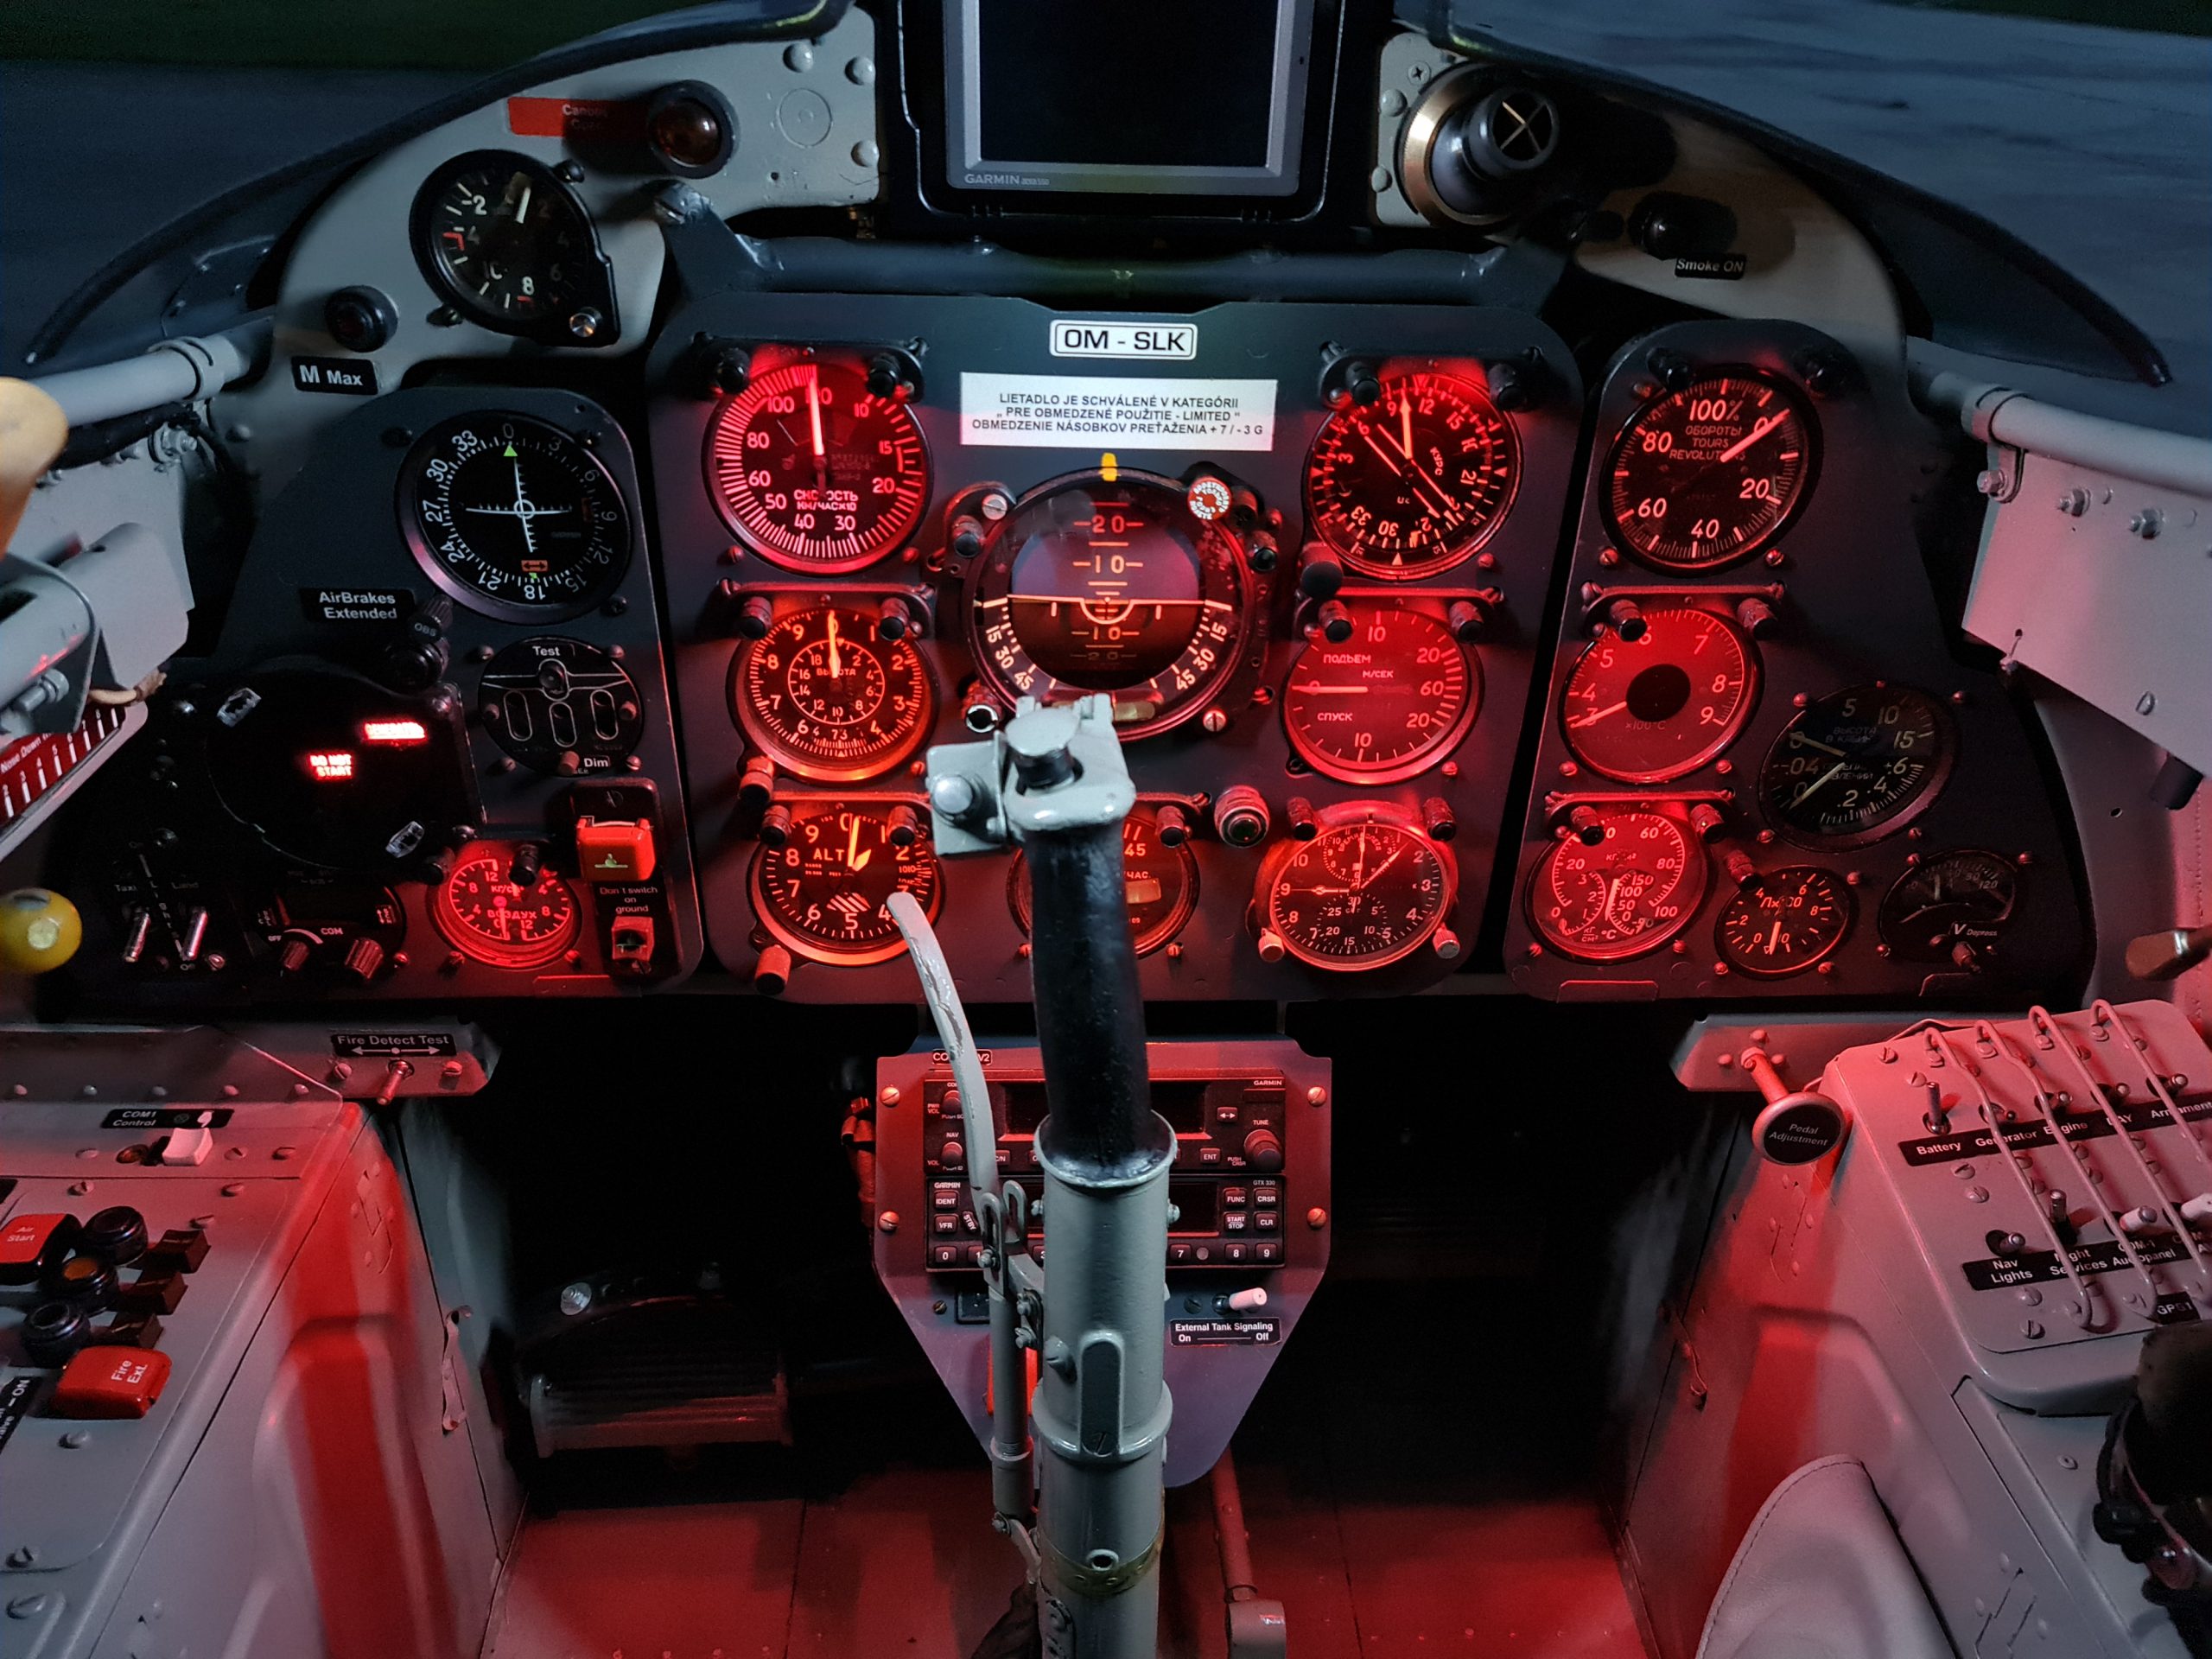 L-29, OMSLK cockpit